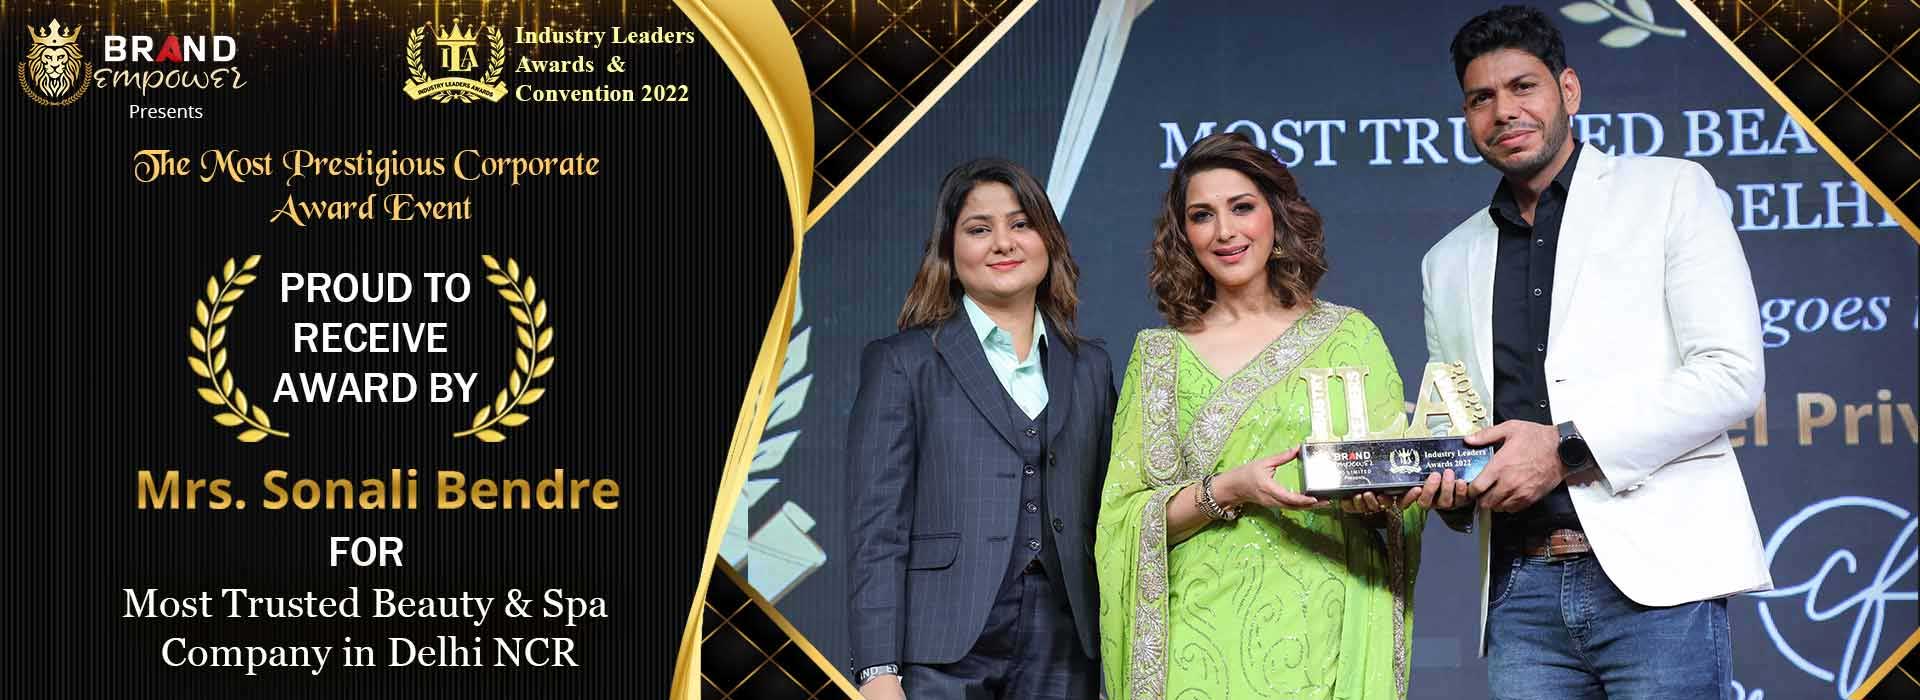 Winner of Industry Leaders Awards 2022 in Shalimar Bagh